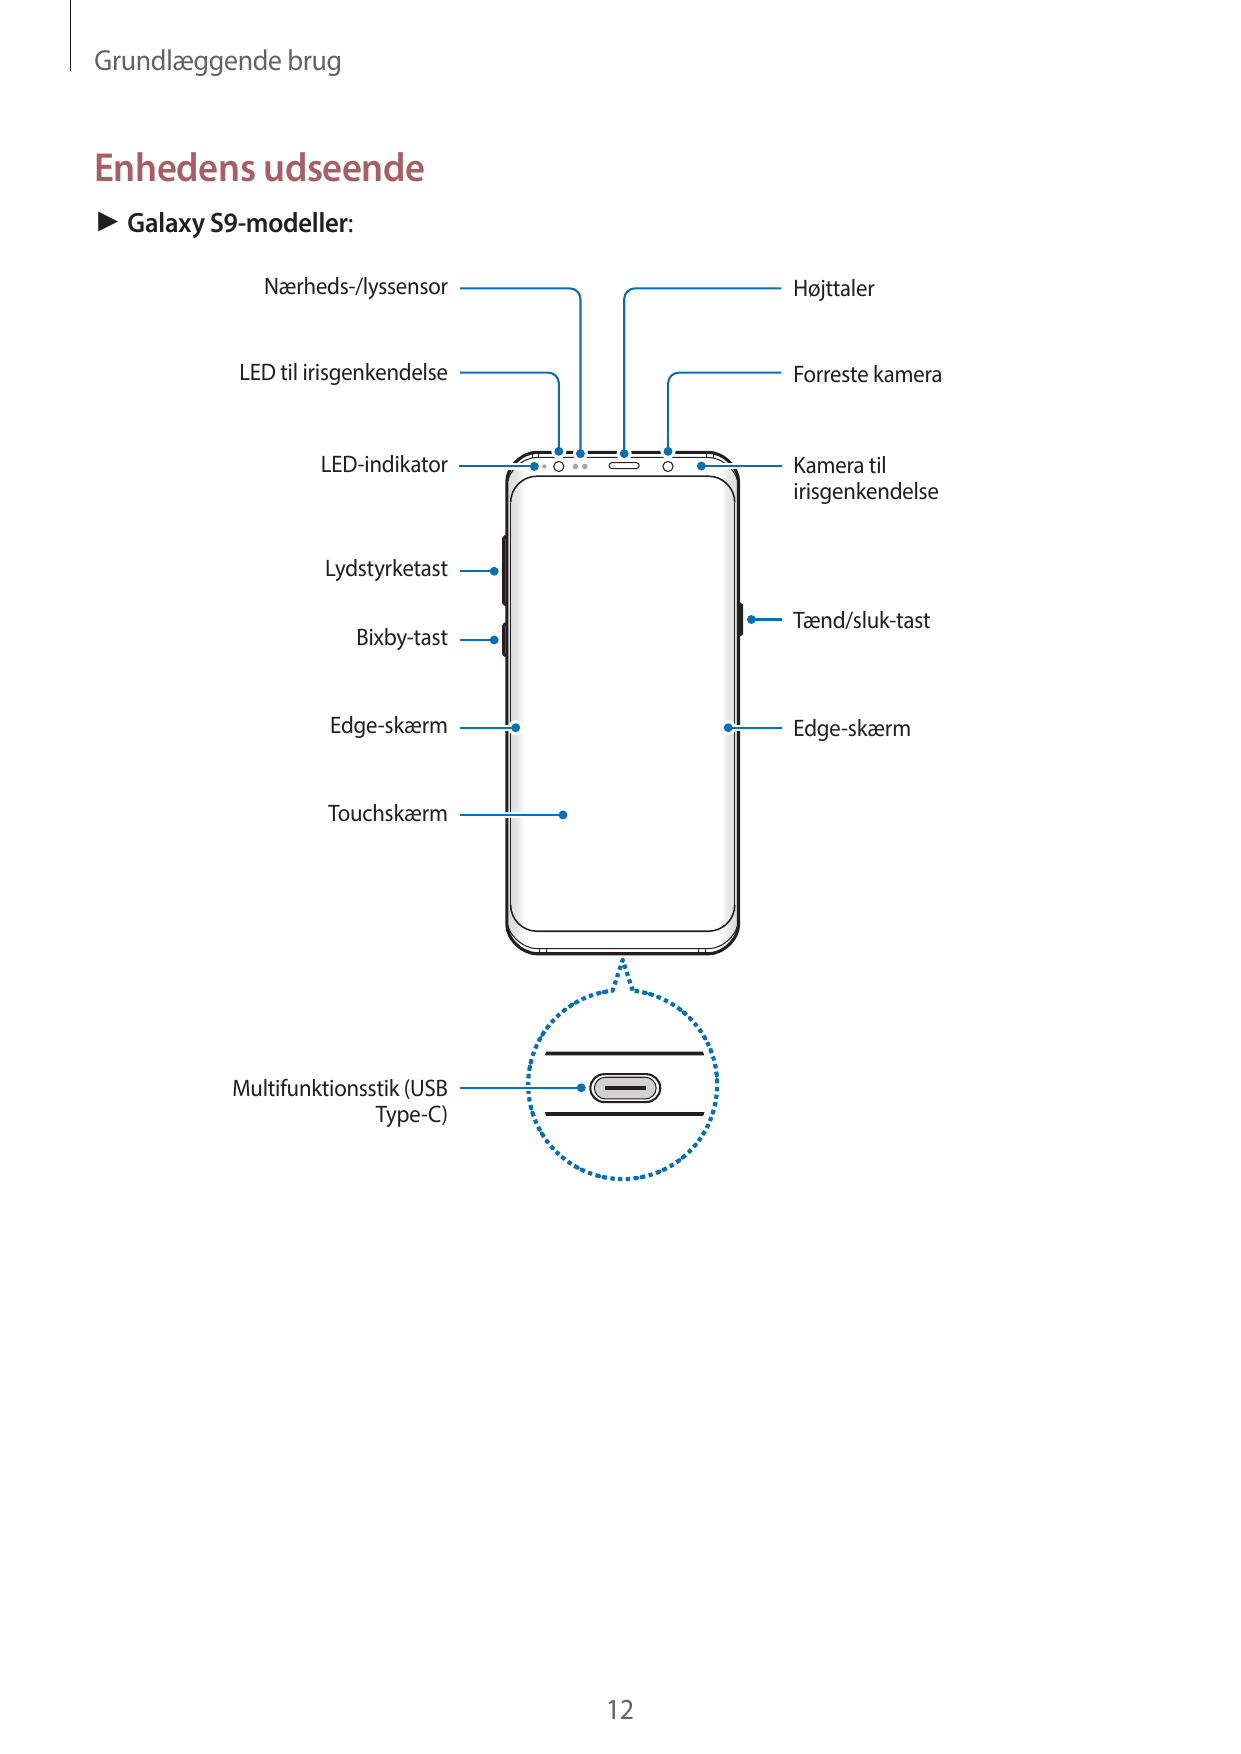 Grundlæggende brugEnhedens udseende► Galaxy S9-modeller:Nærheds-/lyssensorHøjttalerLED til irisgenkendelseForreste kameraLED-ind